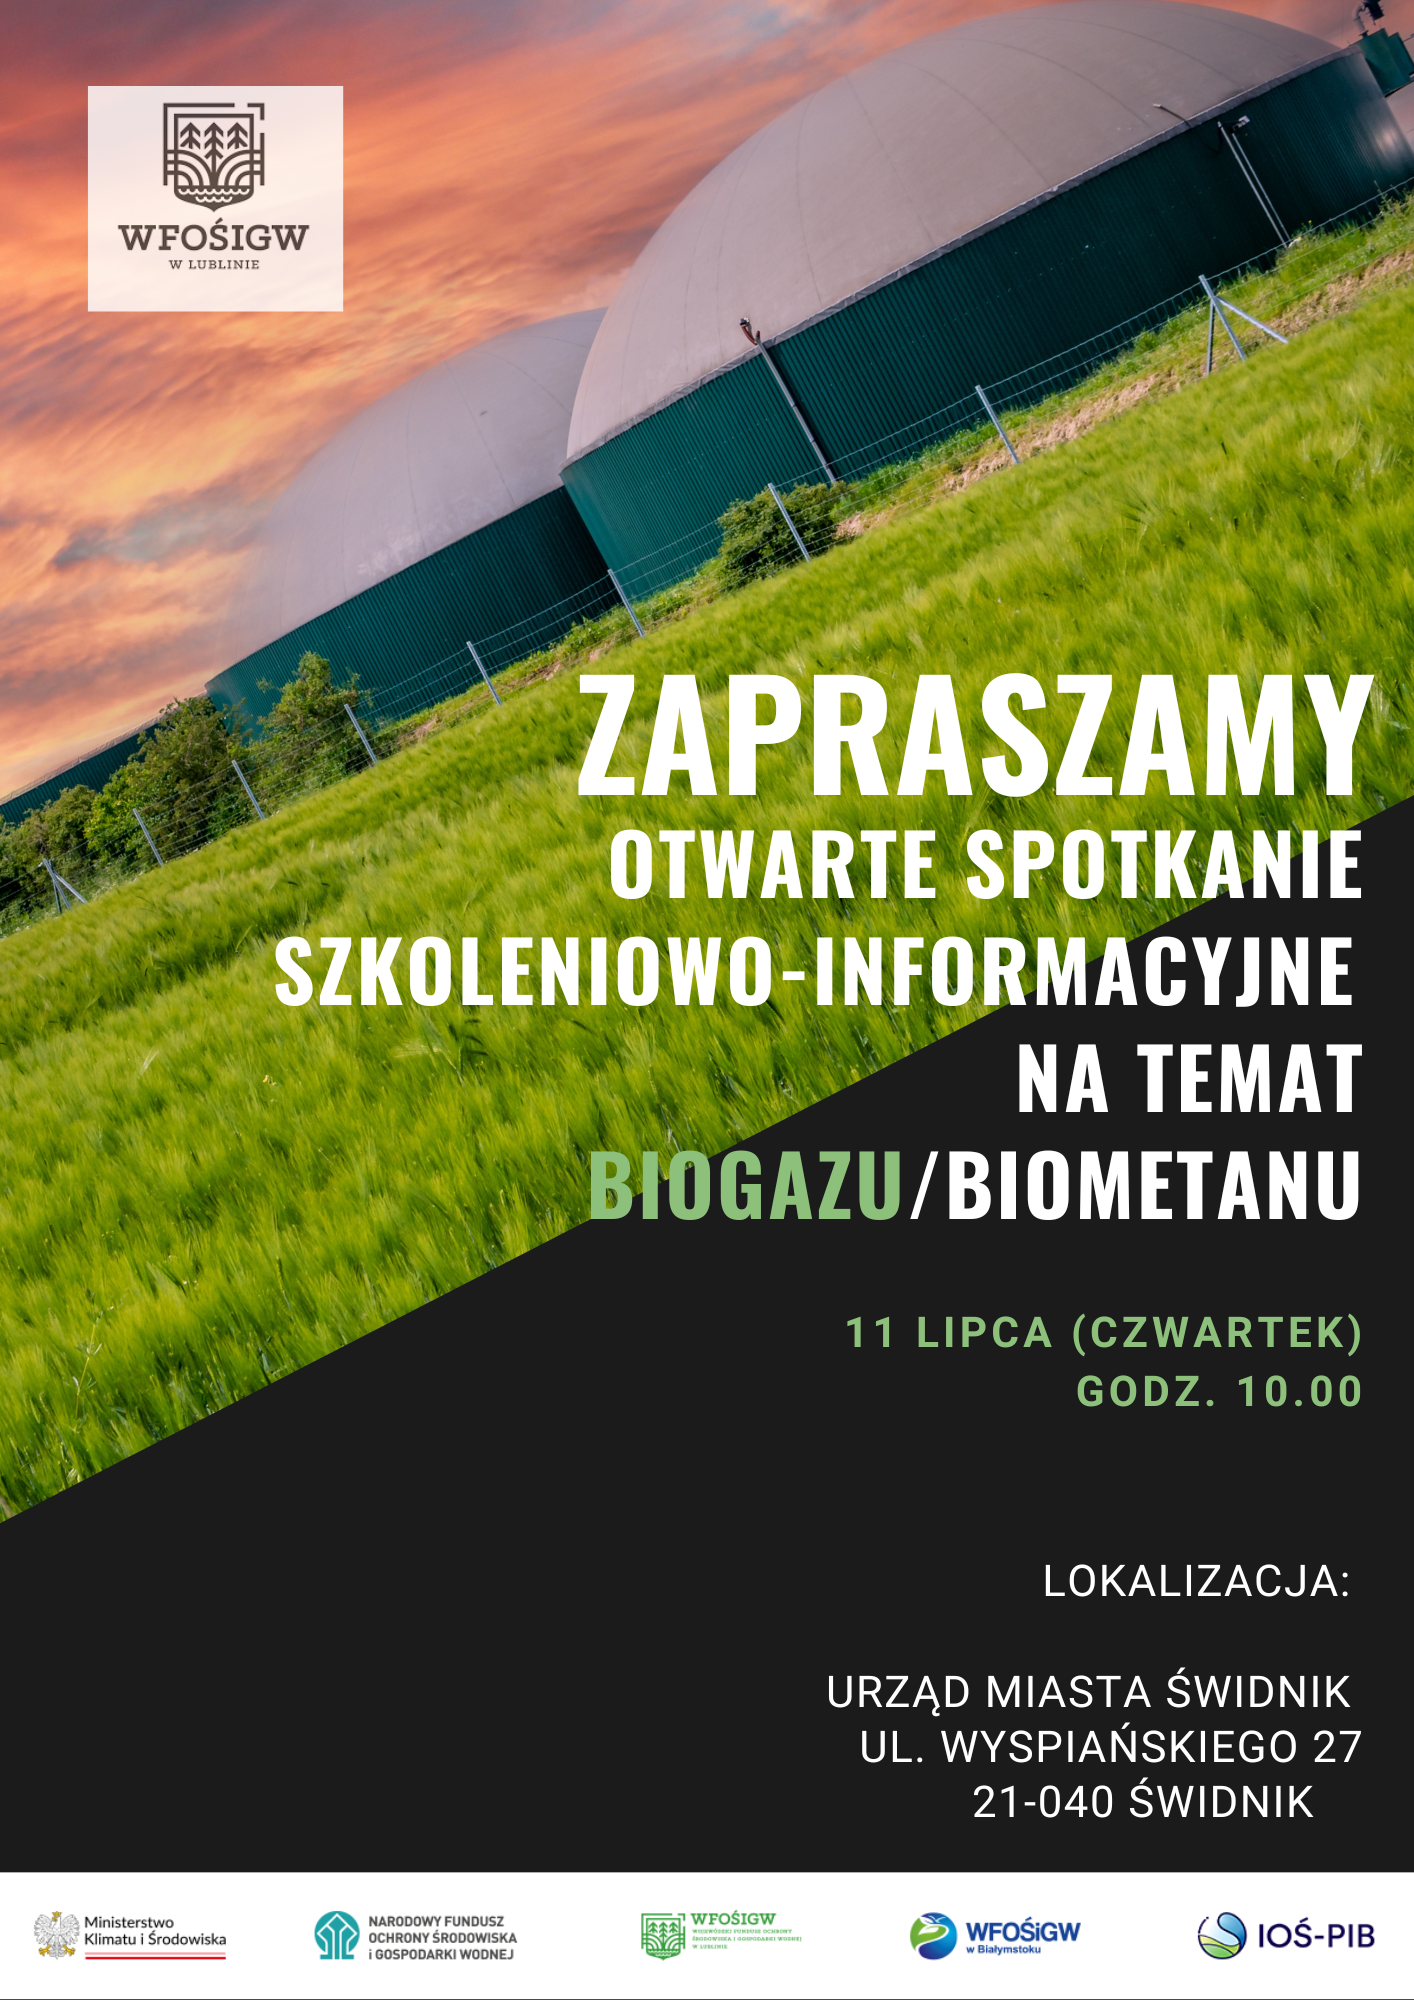 Spotkanie szkoleniowo-informacyjne na temat biogazu/biometanu